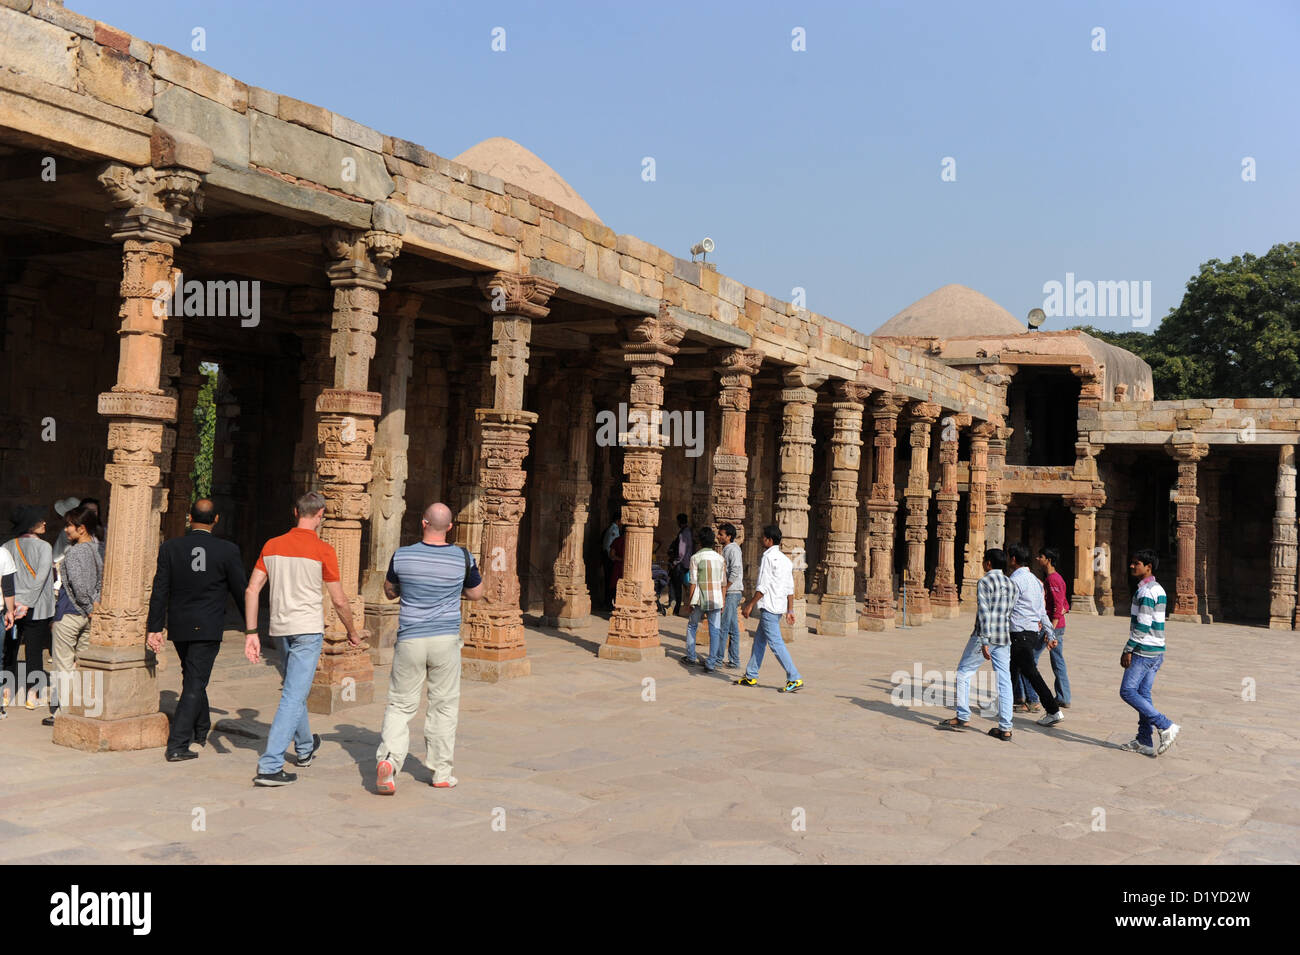 Blick auf den Säulenhallen auf dem Gelände der Qutb-Komplex in Delhi, Indien, 23. November 2012. Da die Spalten nicht lang genug waren, waren sie übereinander gestapelt. In der Umgebung befinden sich die Ruinen der ältesten Hof Moschee in Indien, die Quwwat-Ul-Islam (könnte der Islam), die auf den Ruinen der zerstörten Hindu-Tempel gebaut wurde. Foto: Jens Kalaene Stockfoto